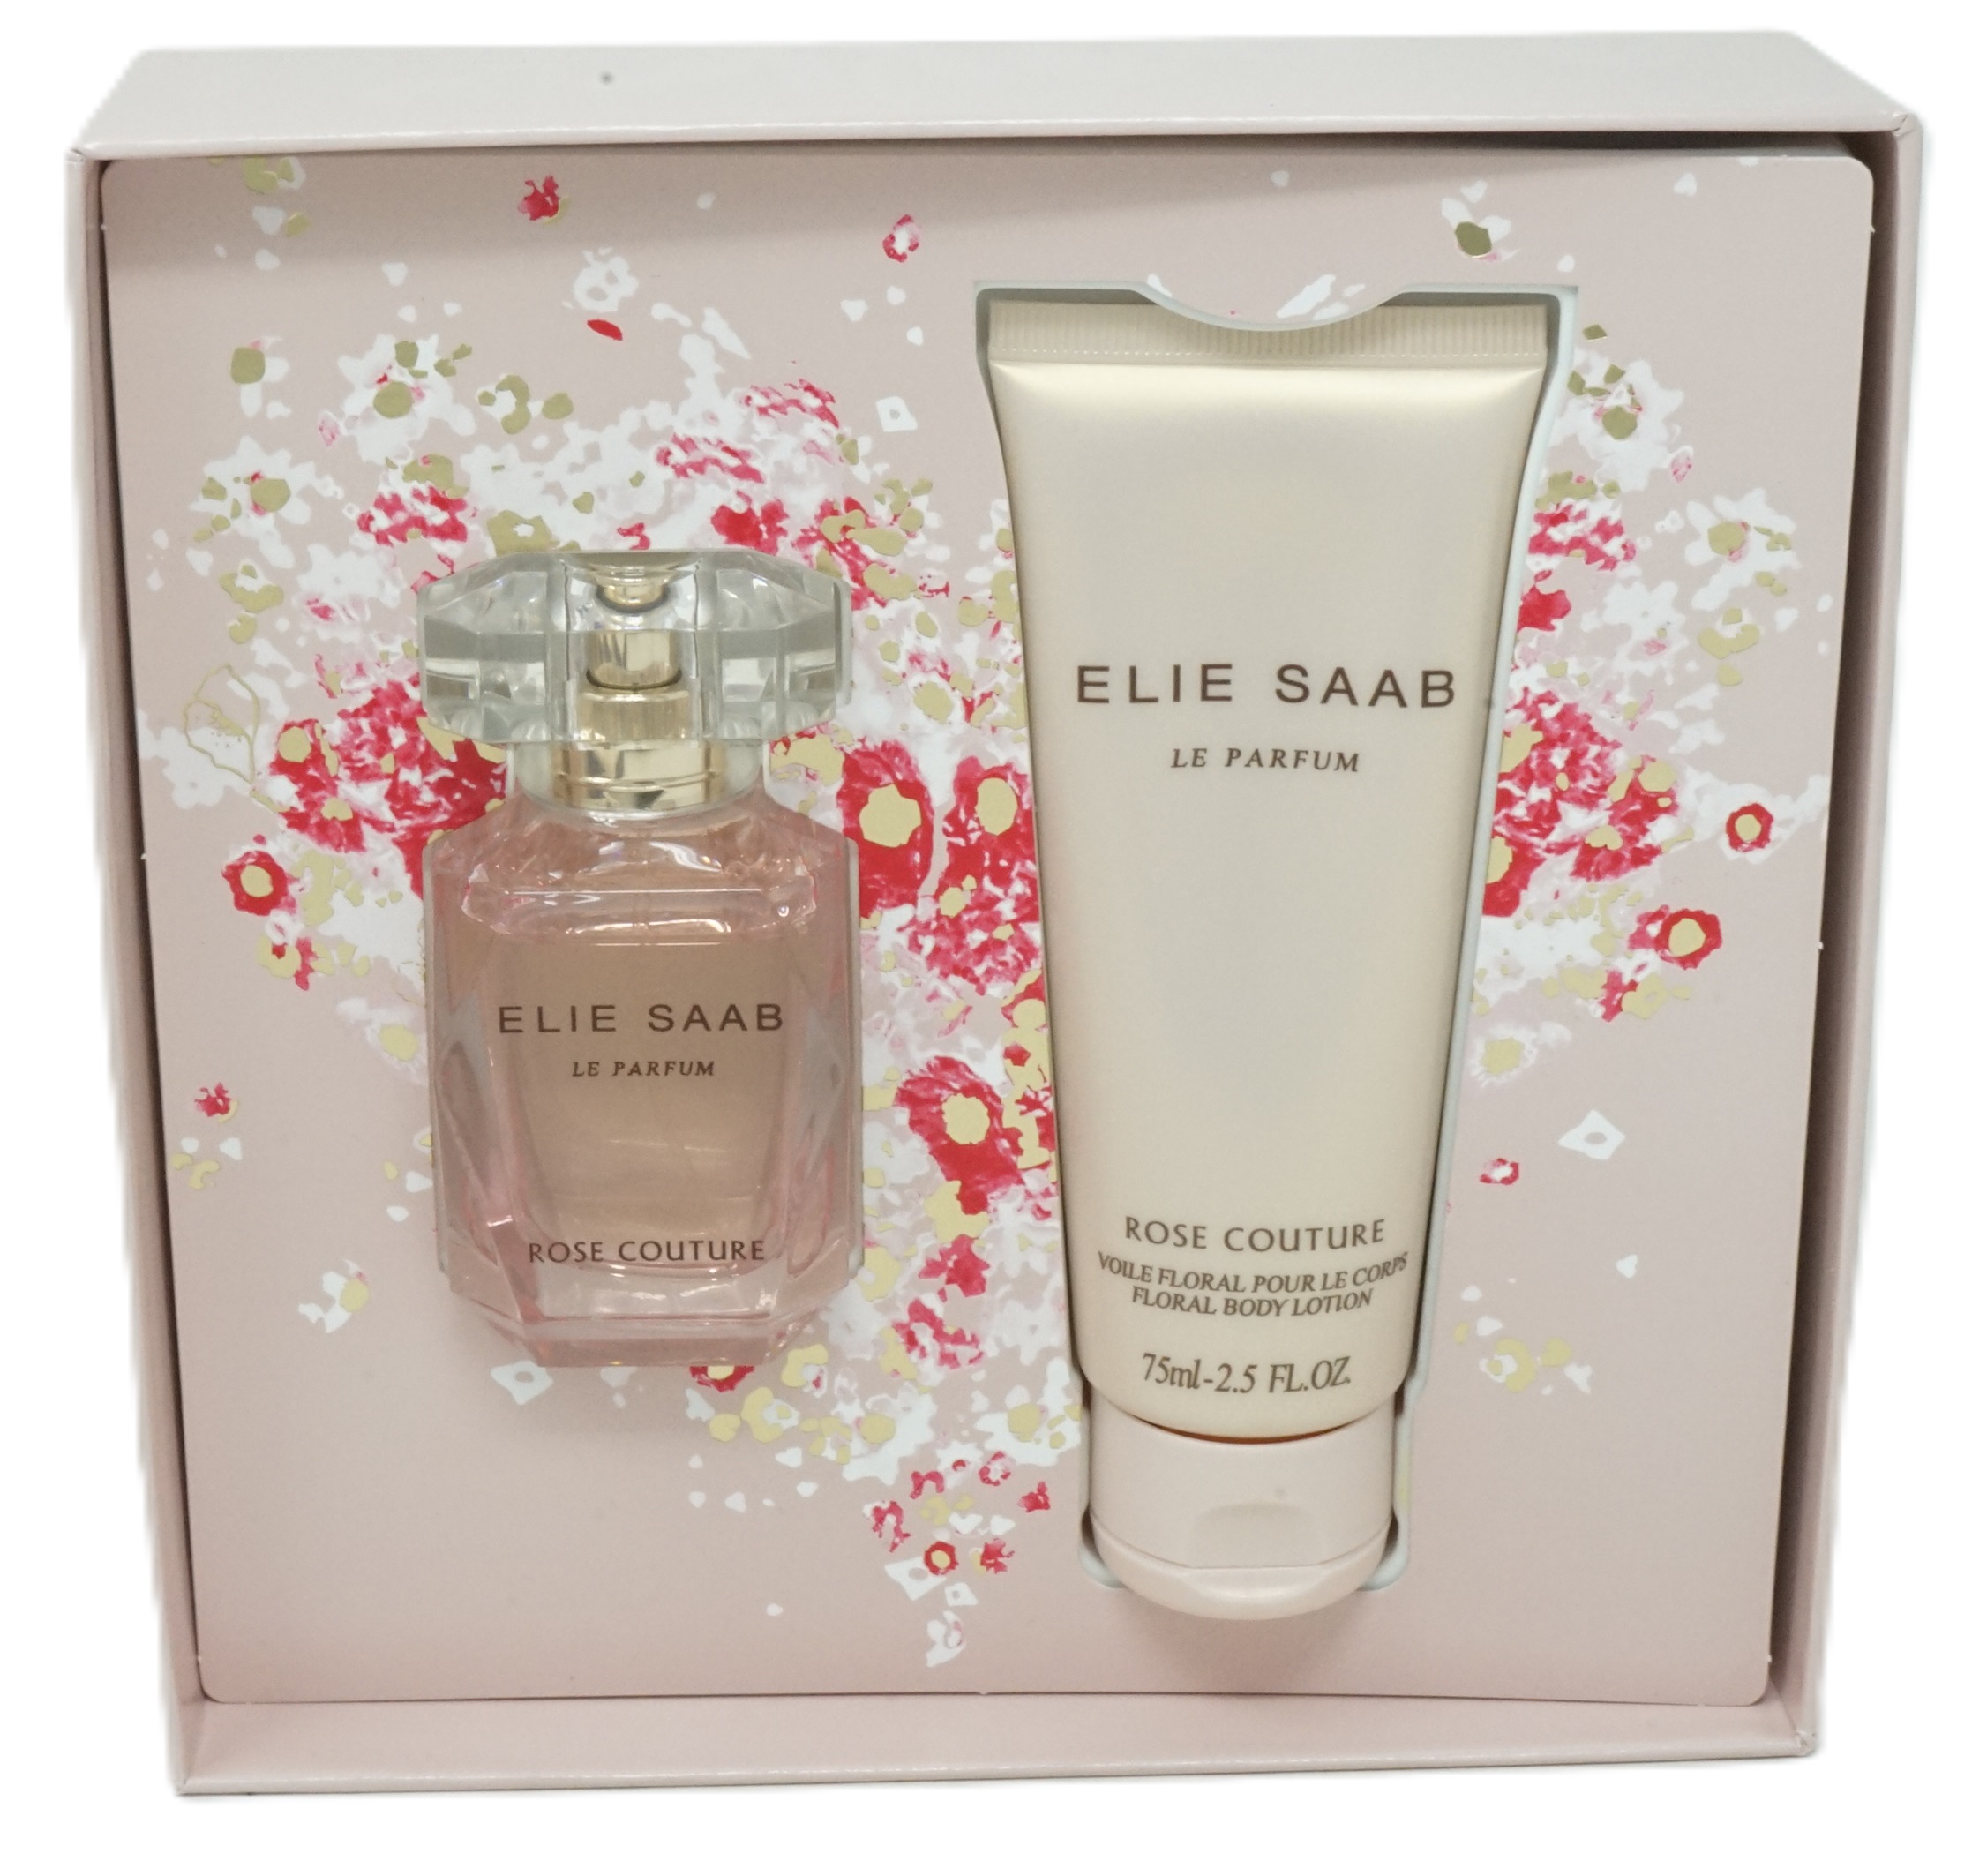 Elie Saab Le Parfum Rose Couture Eau de Toilette 30ml + Body Lotion 75ml